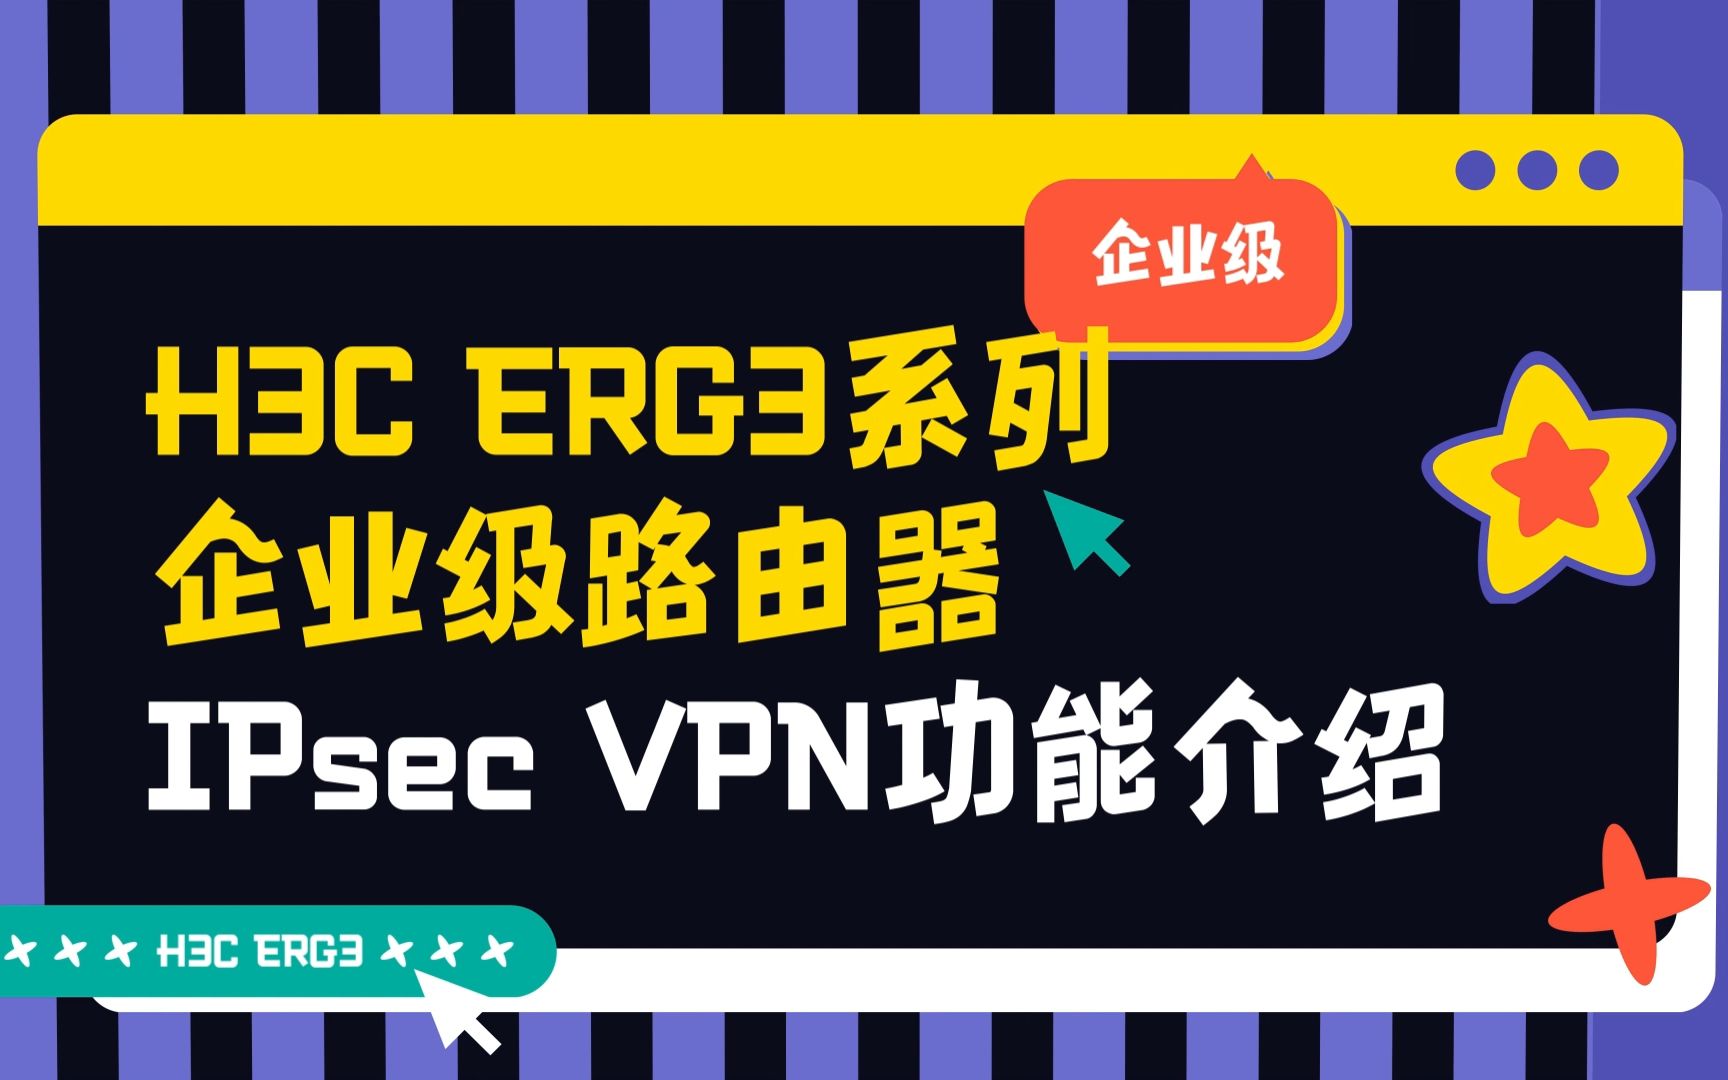 H3C ER G3系列路由器 IPsec VPN功能介绍视频